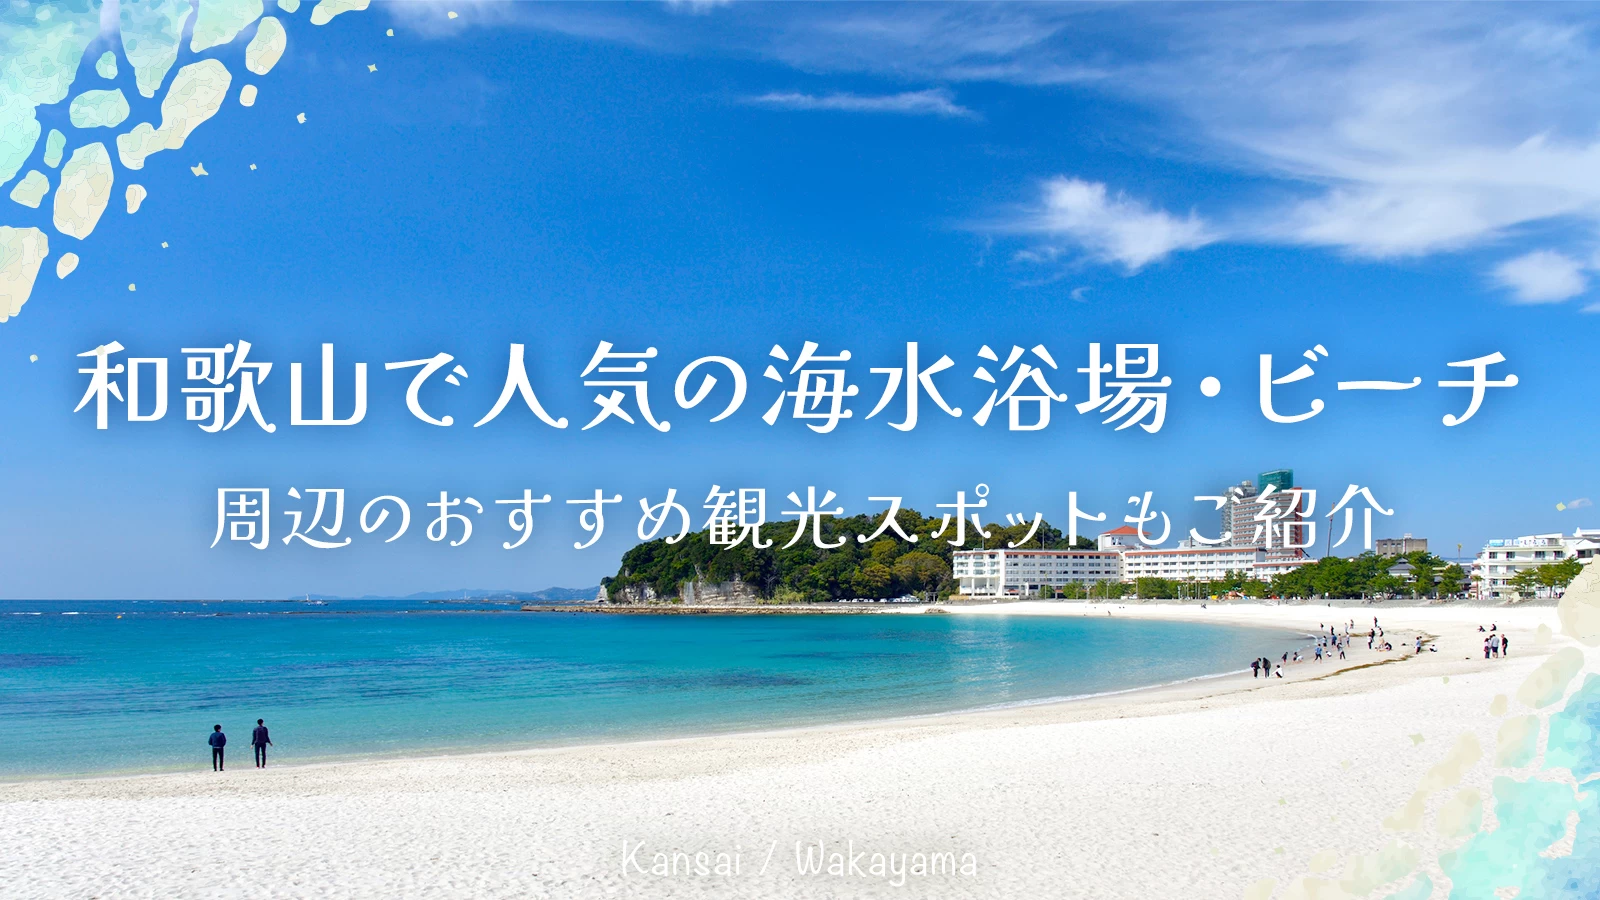 【関西】和歌山で人気の海水浴場・ビーチ13選 周辺のおすすめ観光スポットもご紹介